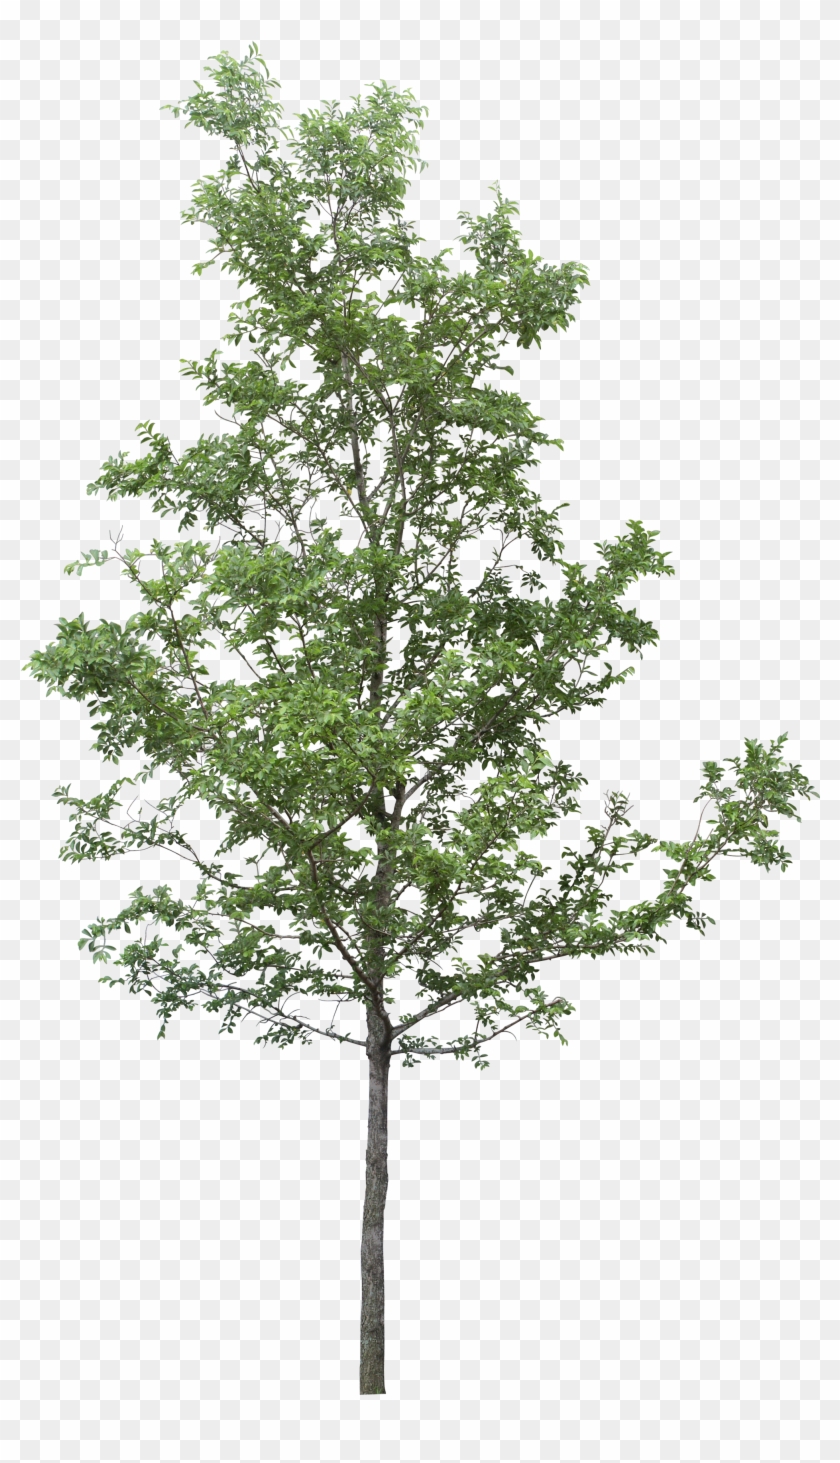 Tree Png, Transparent Png - 2037x3500 (#86765) - PinPng